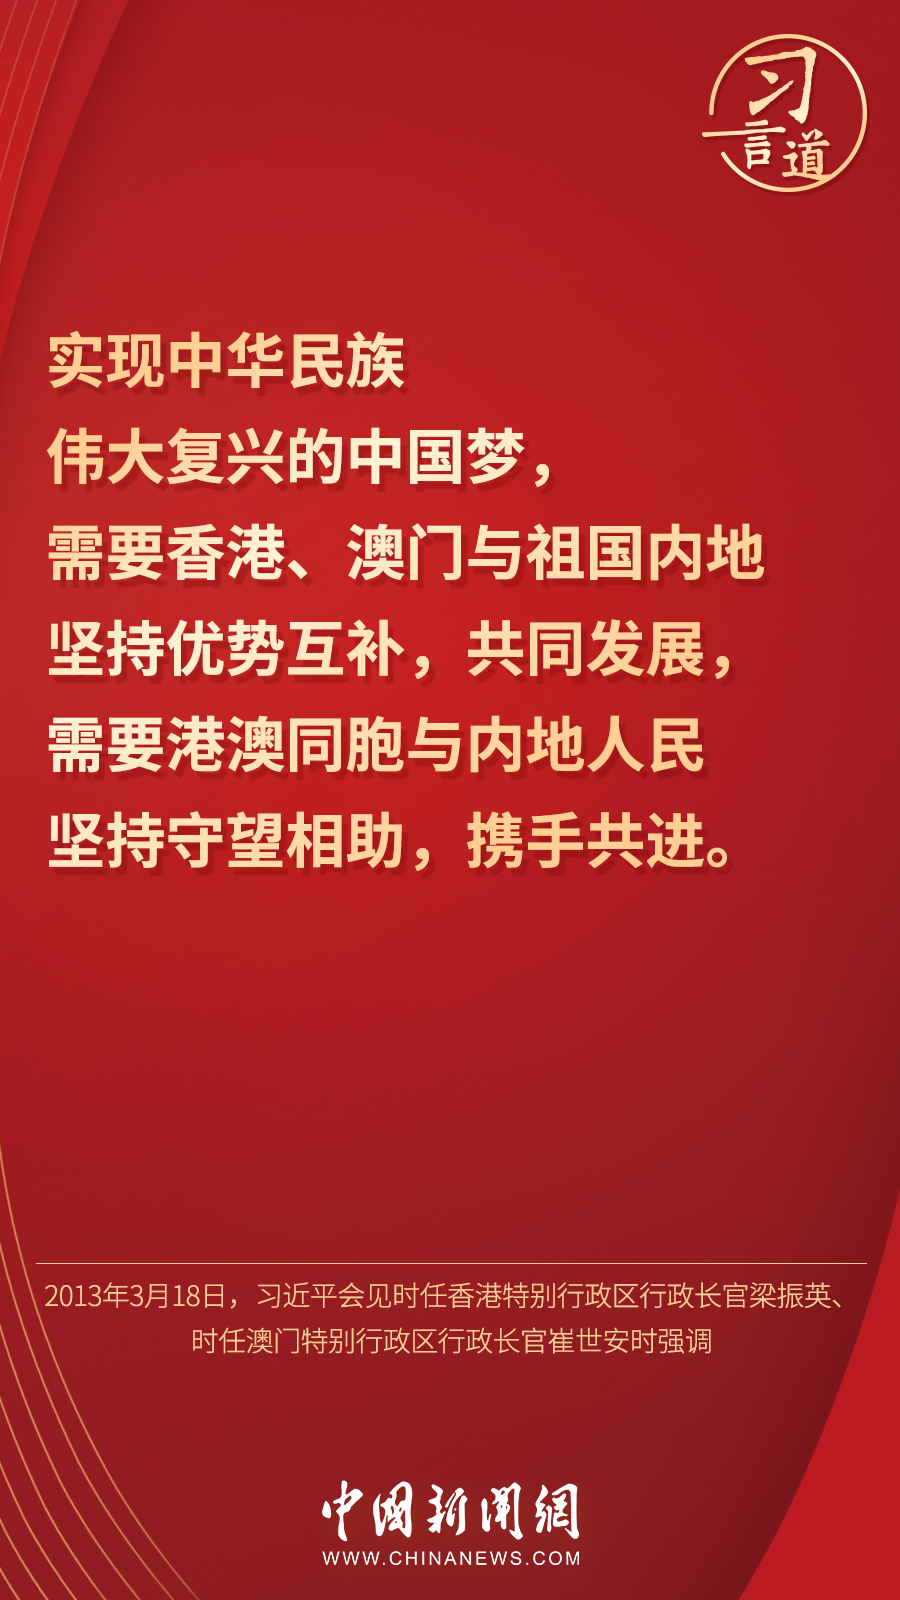 【明珠耀香江】习言道丨“香港的命运从来同祖国紧密相连”